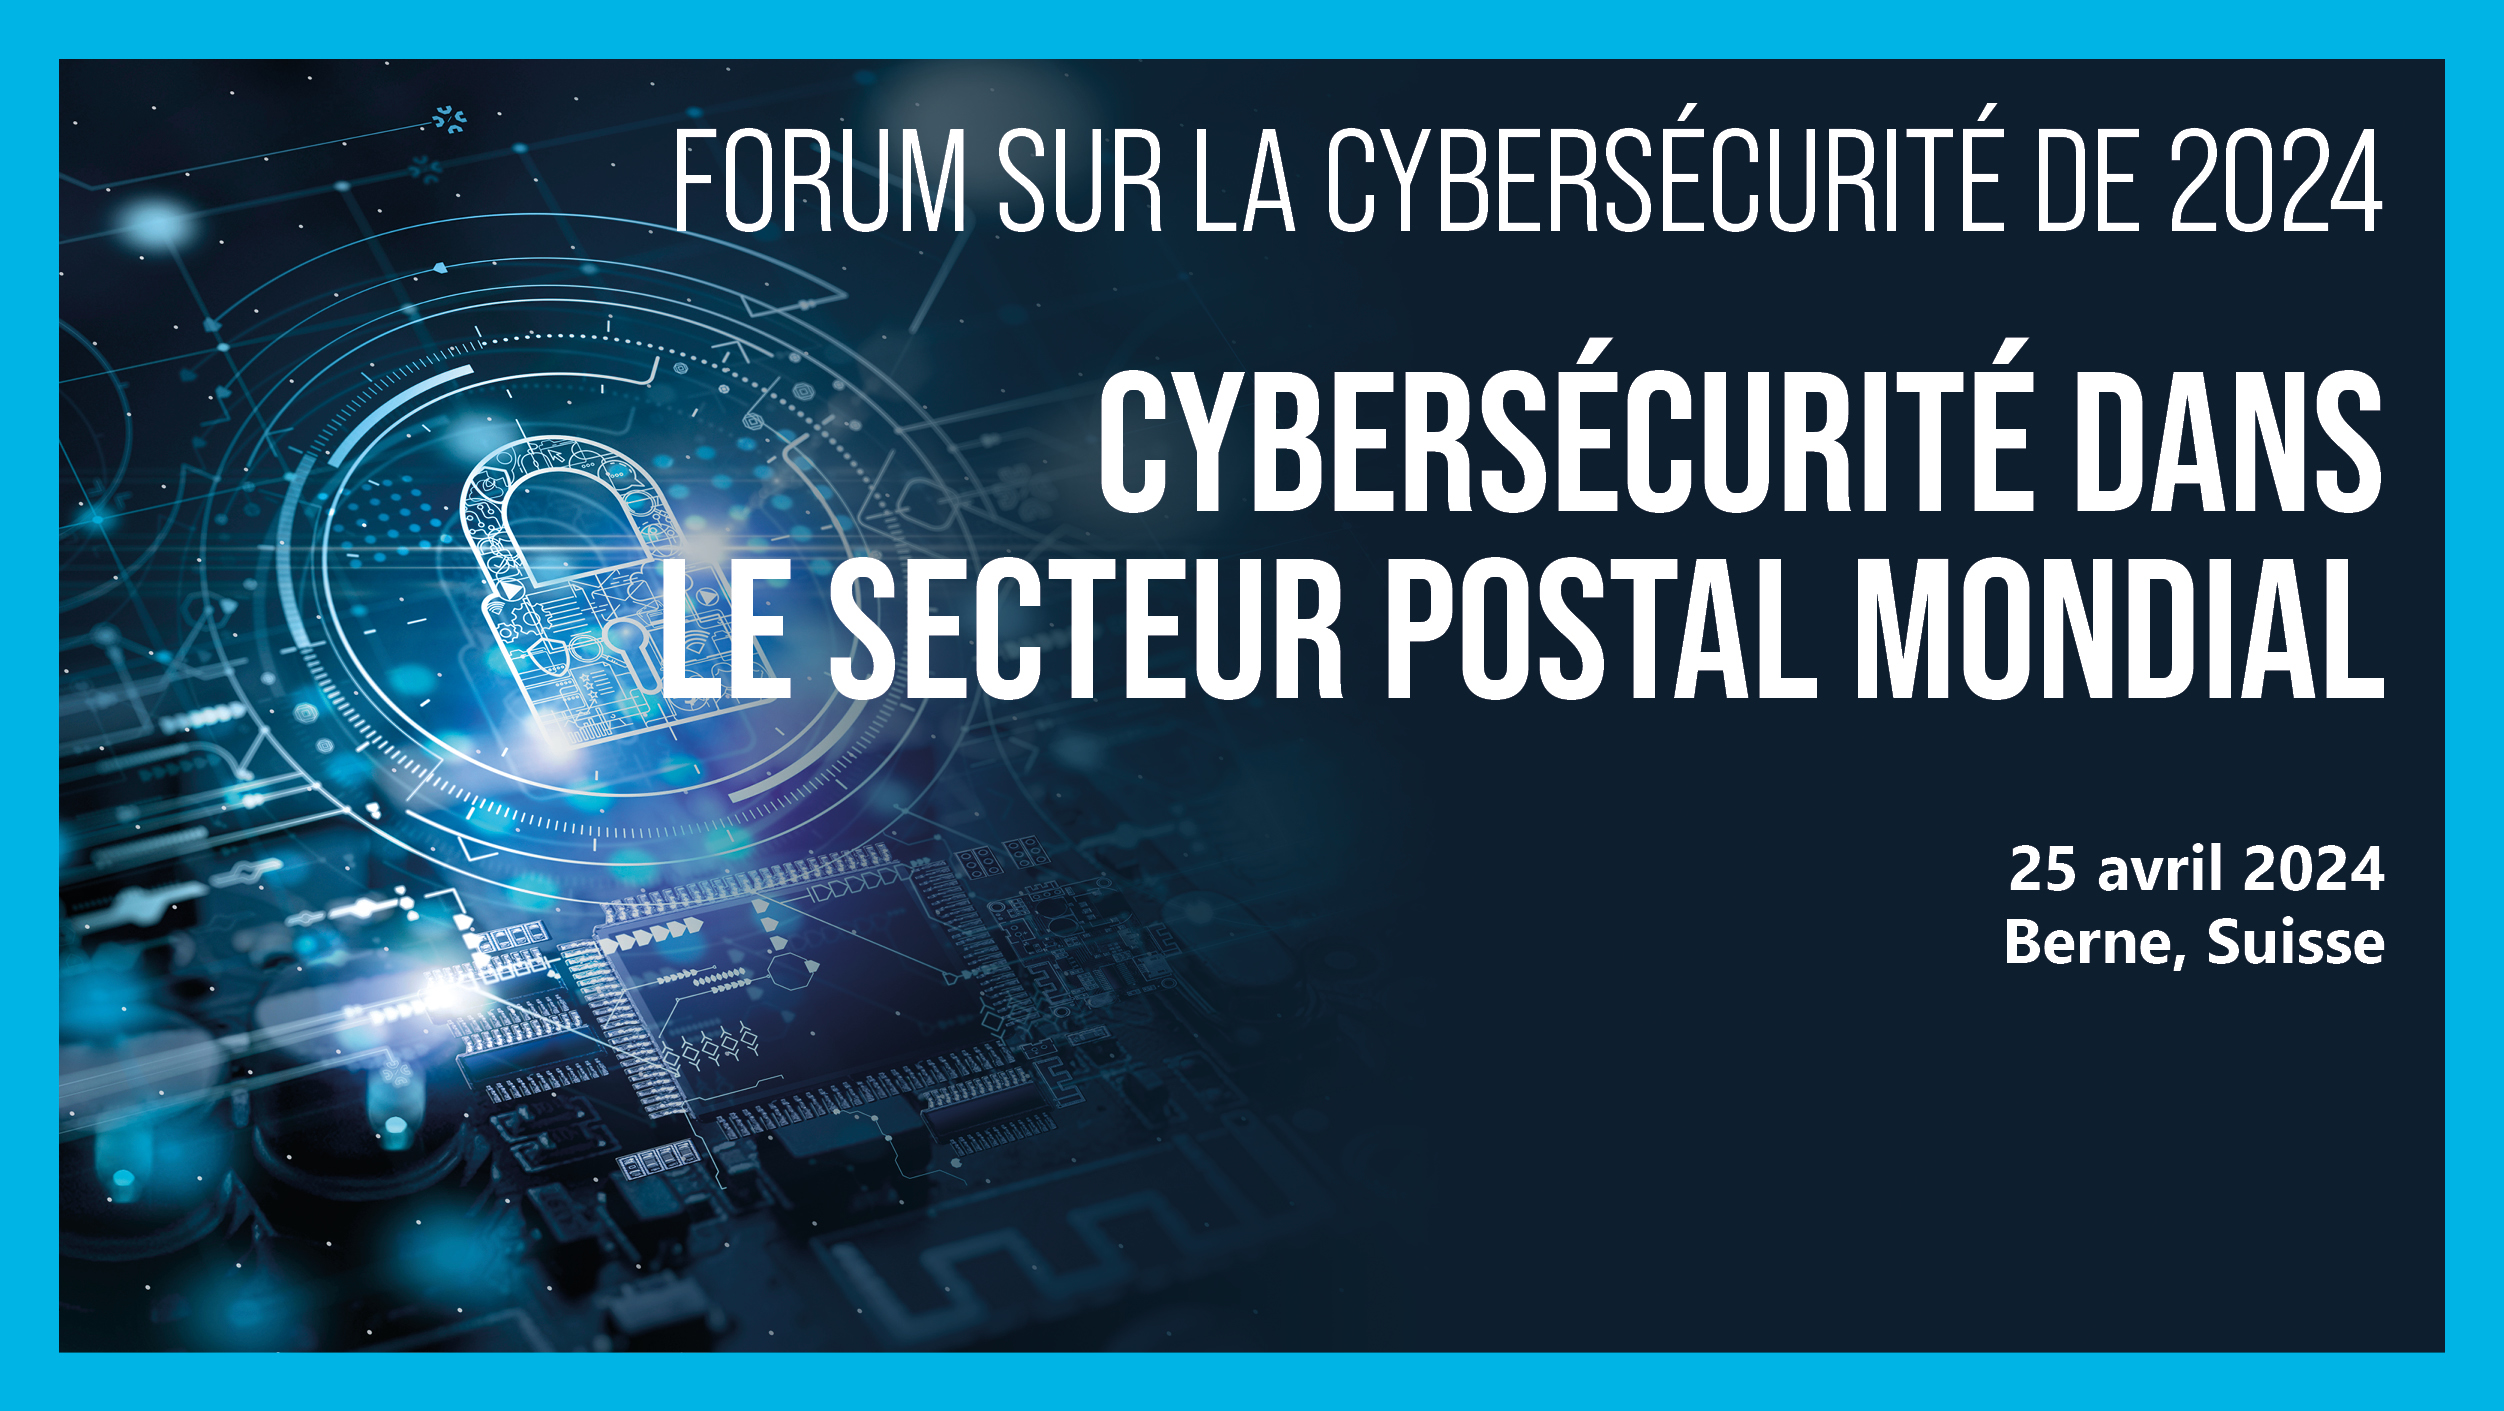 Forum sur la cybersécurité de 2024